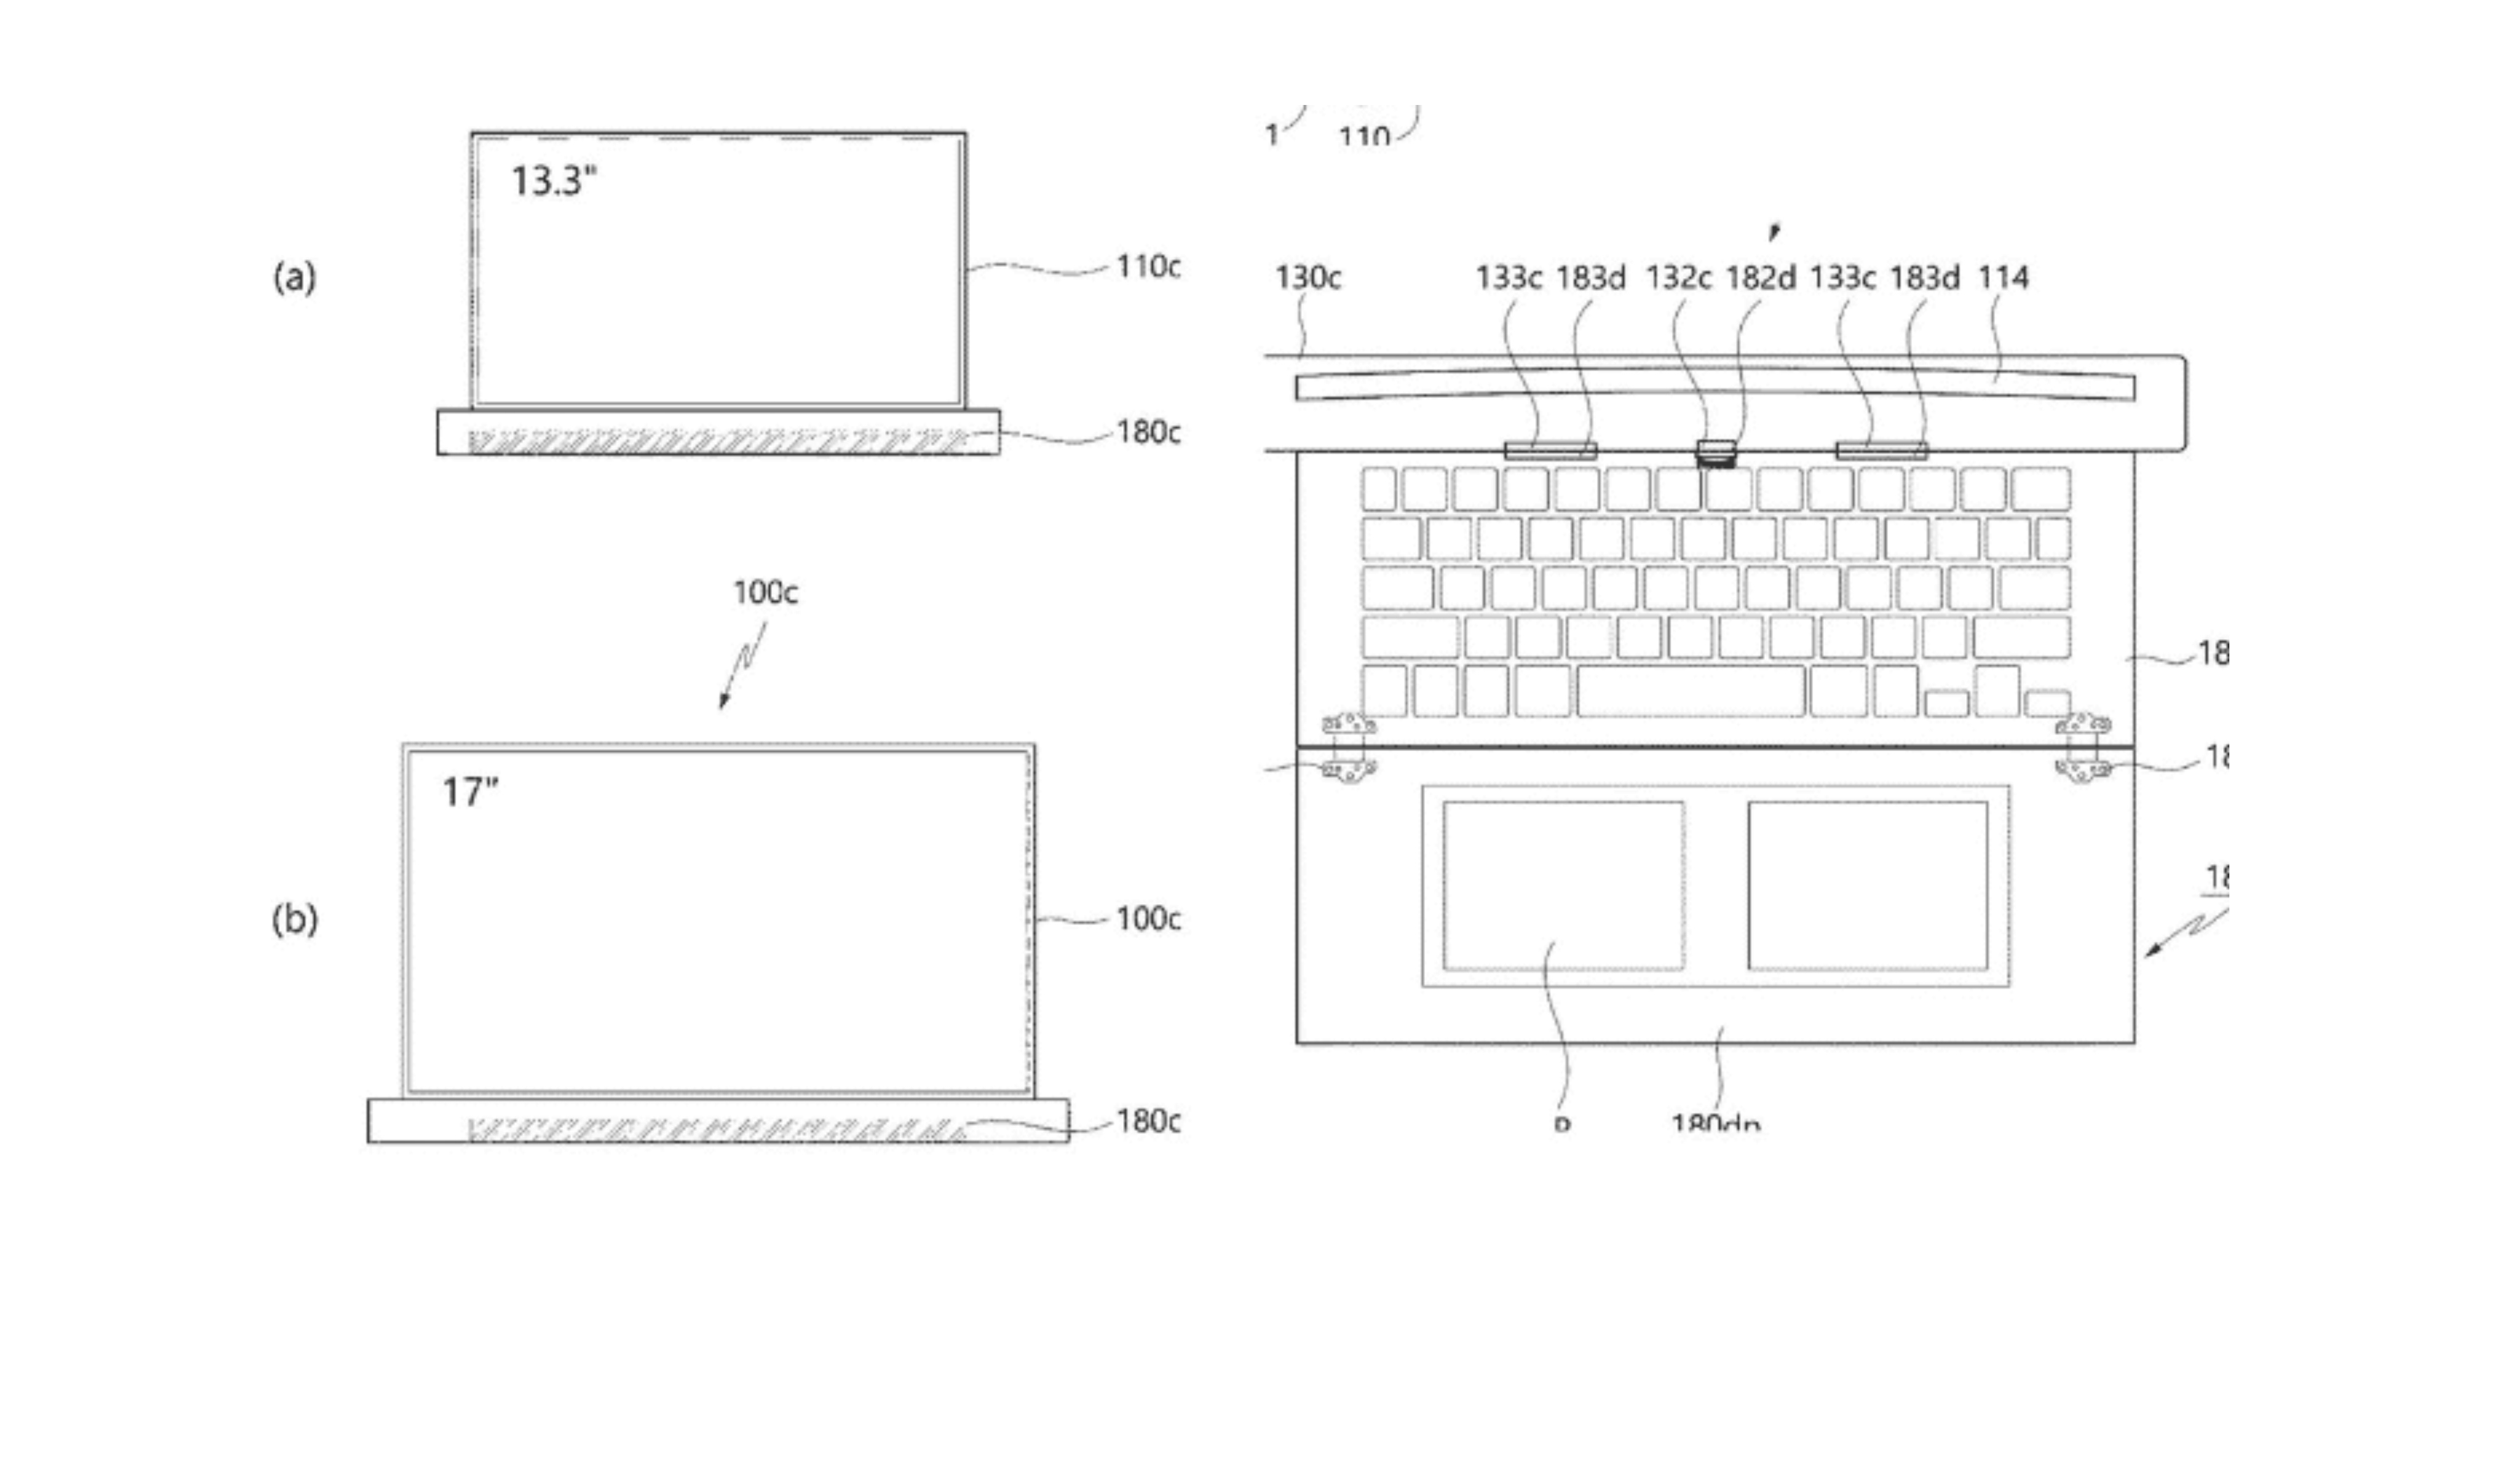 LG Patent für rollbares Laptop-Design 